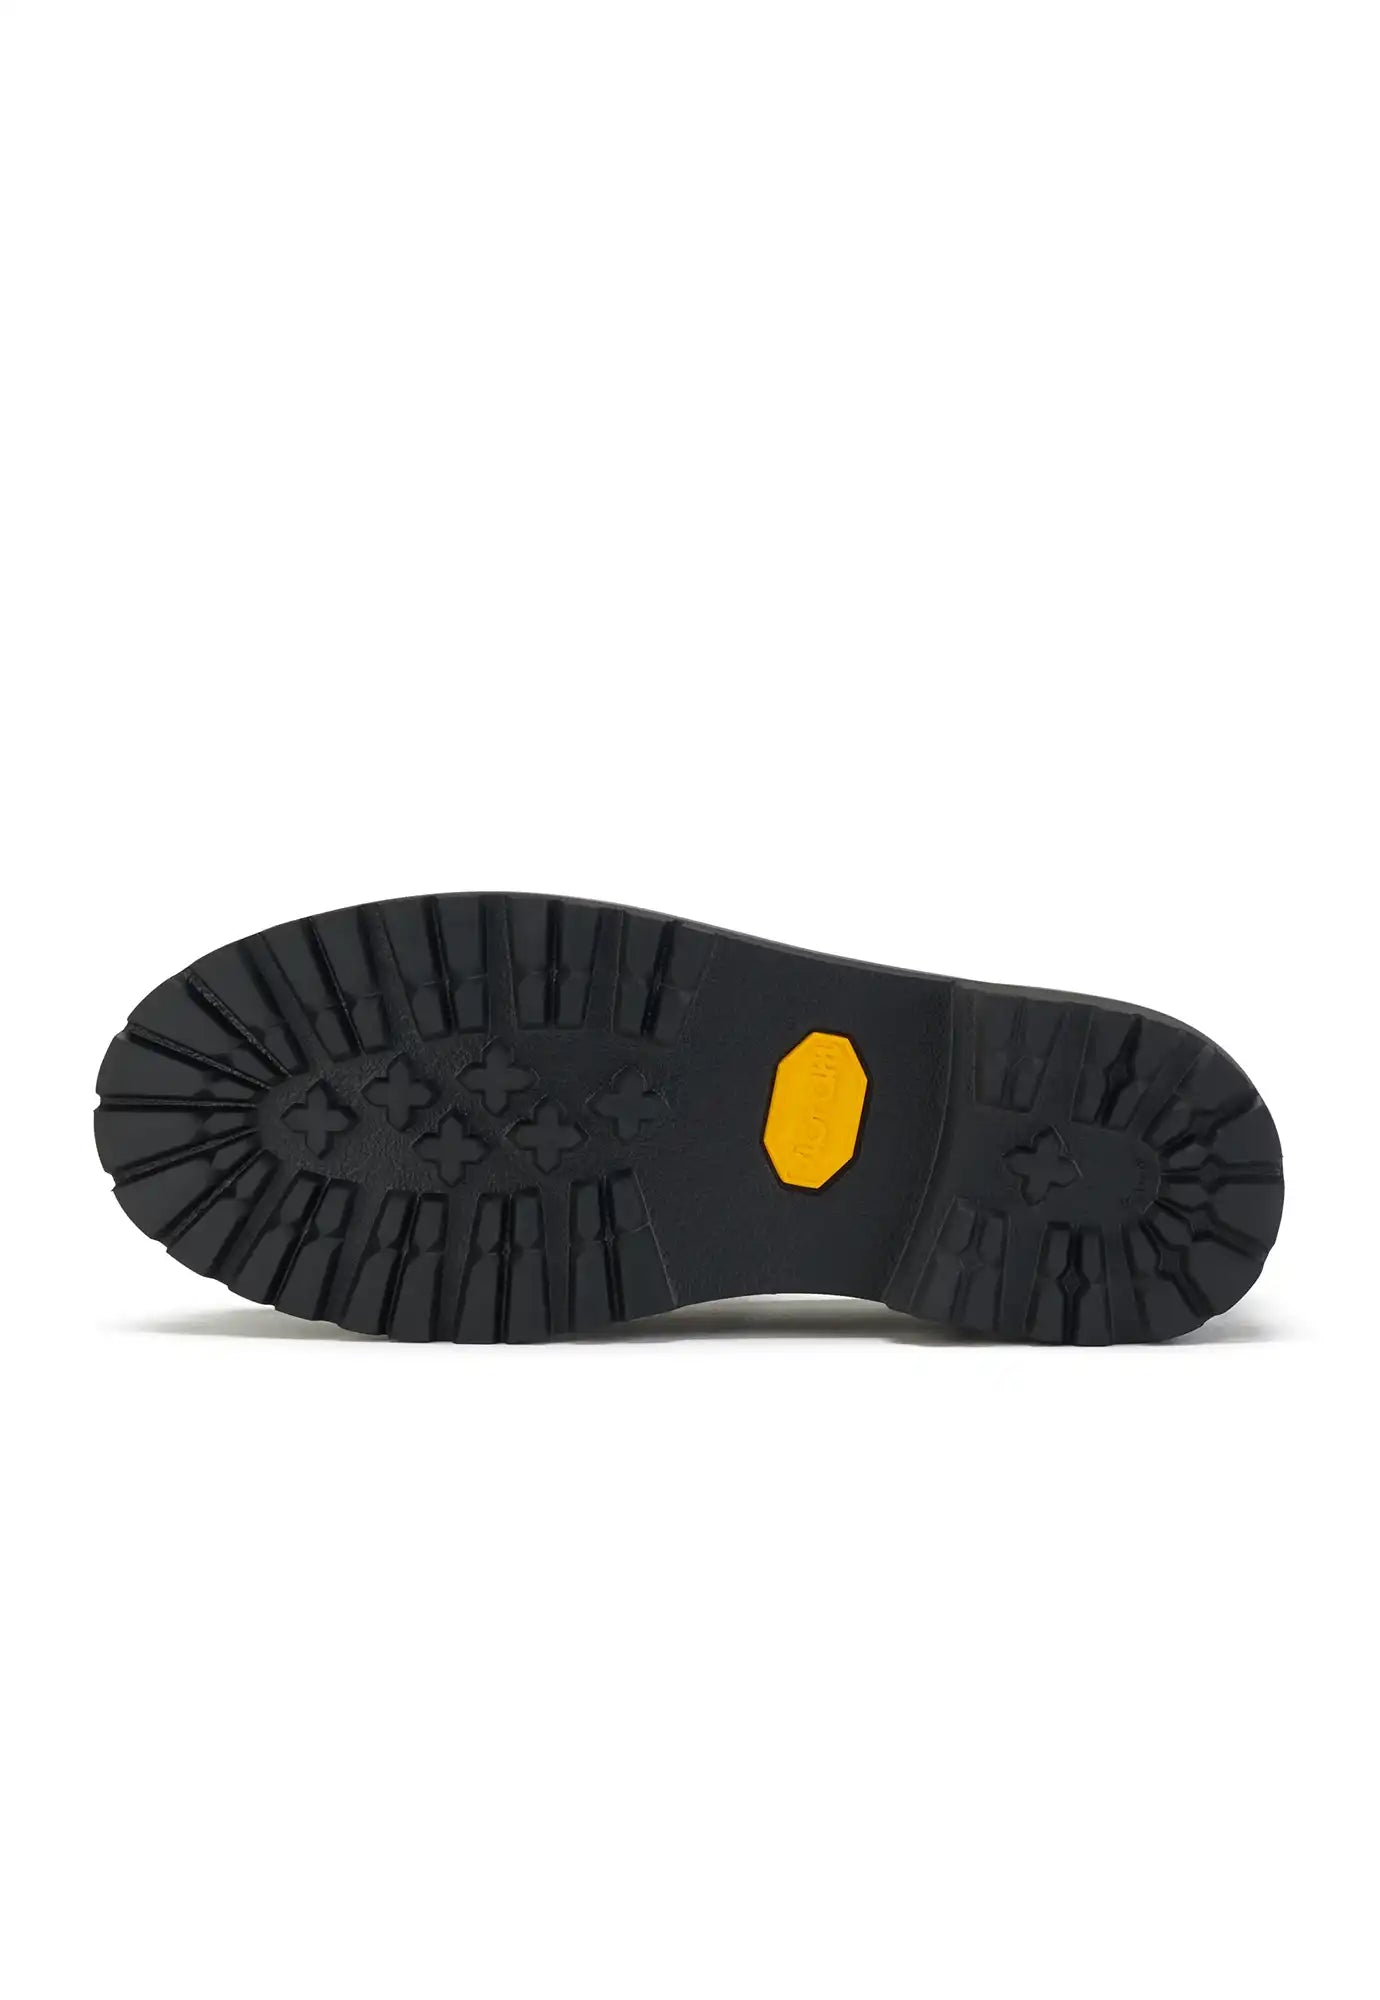 rollie - loafer step - triple black